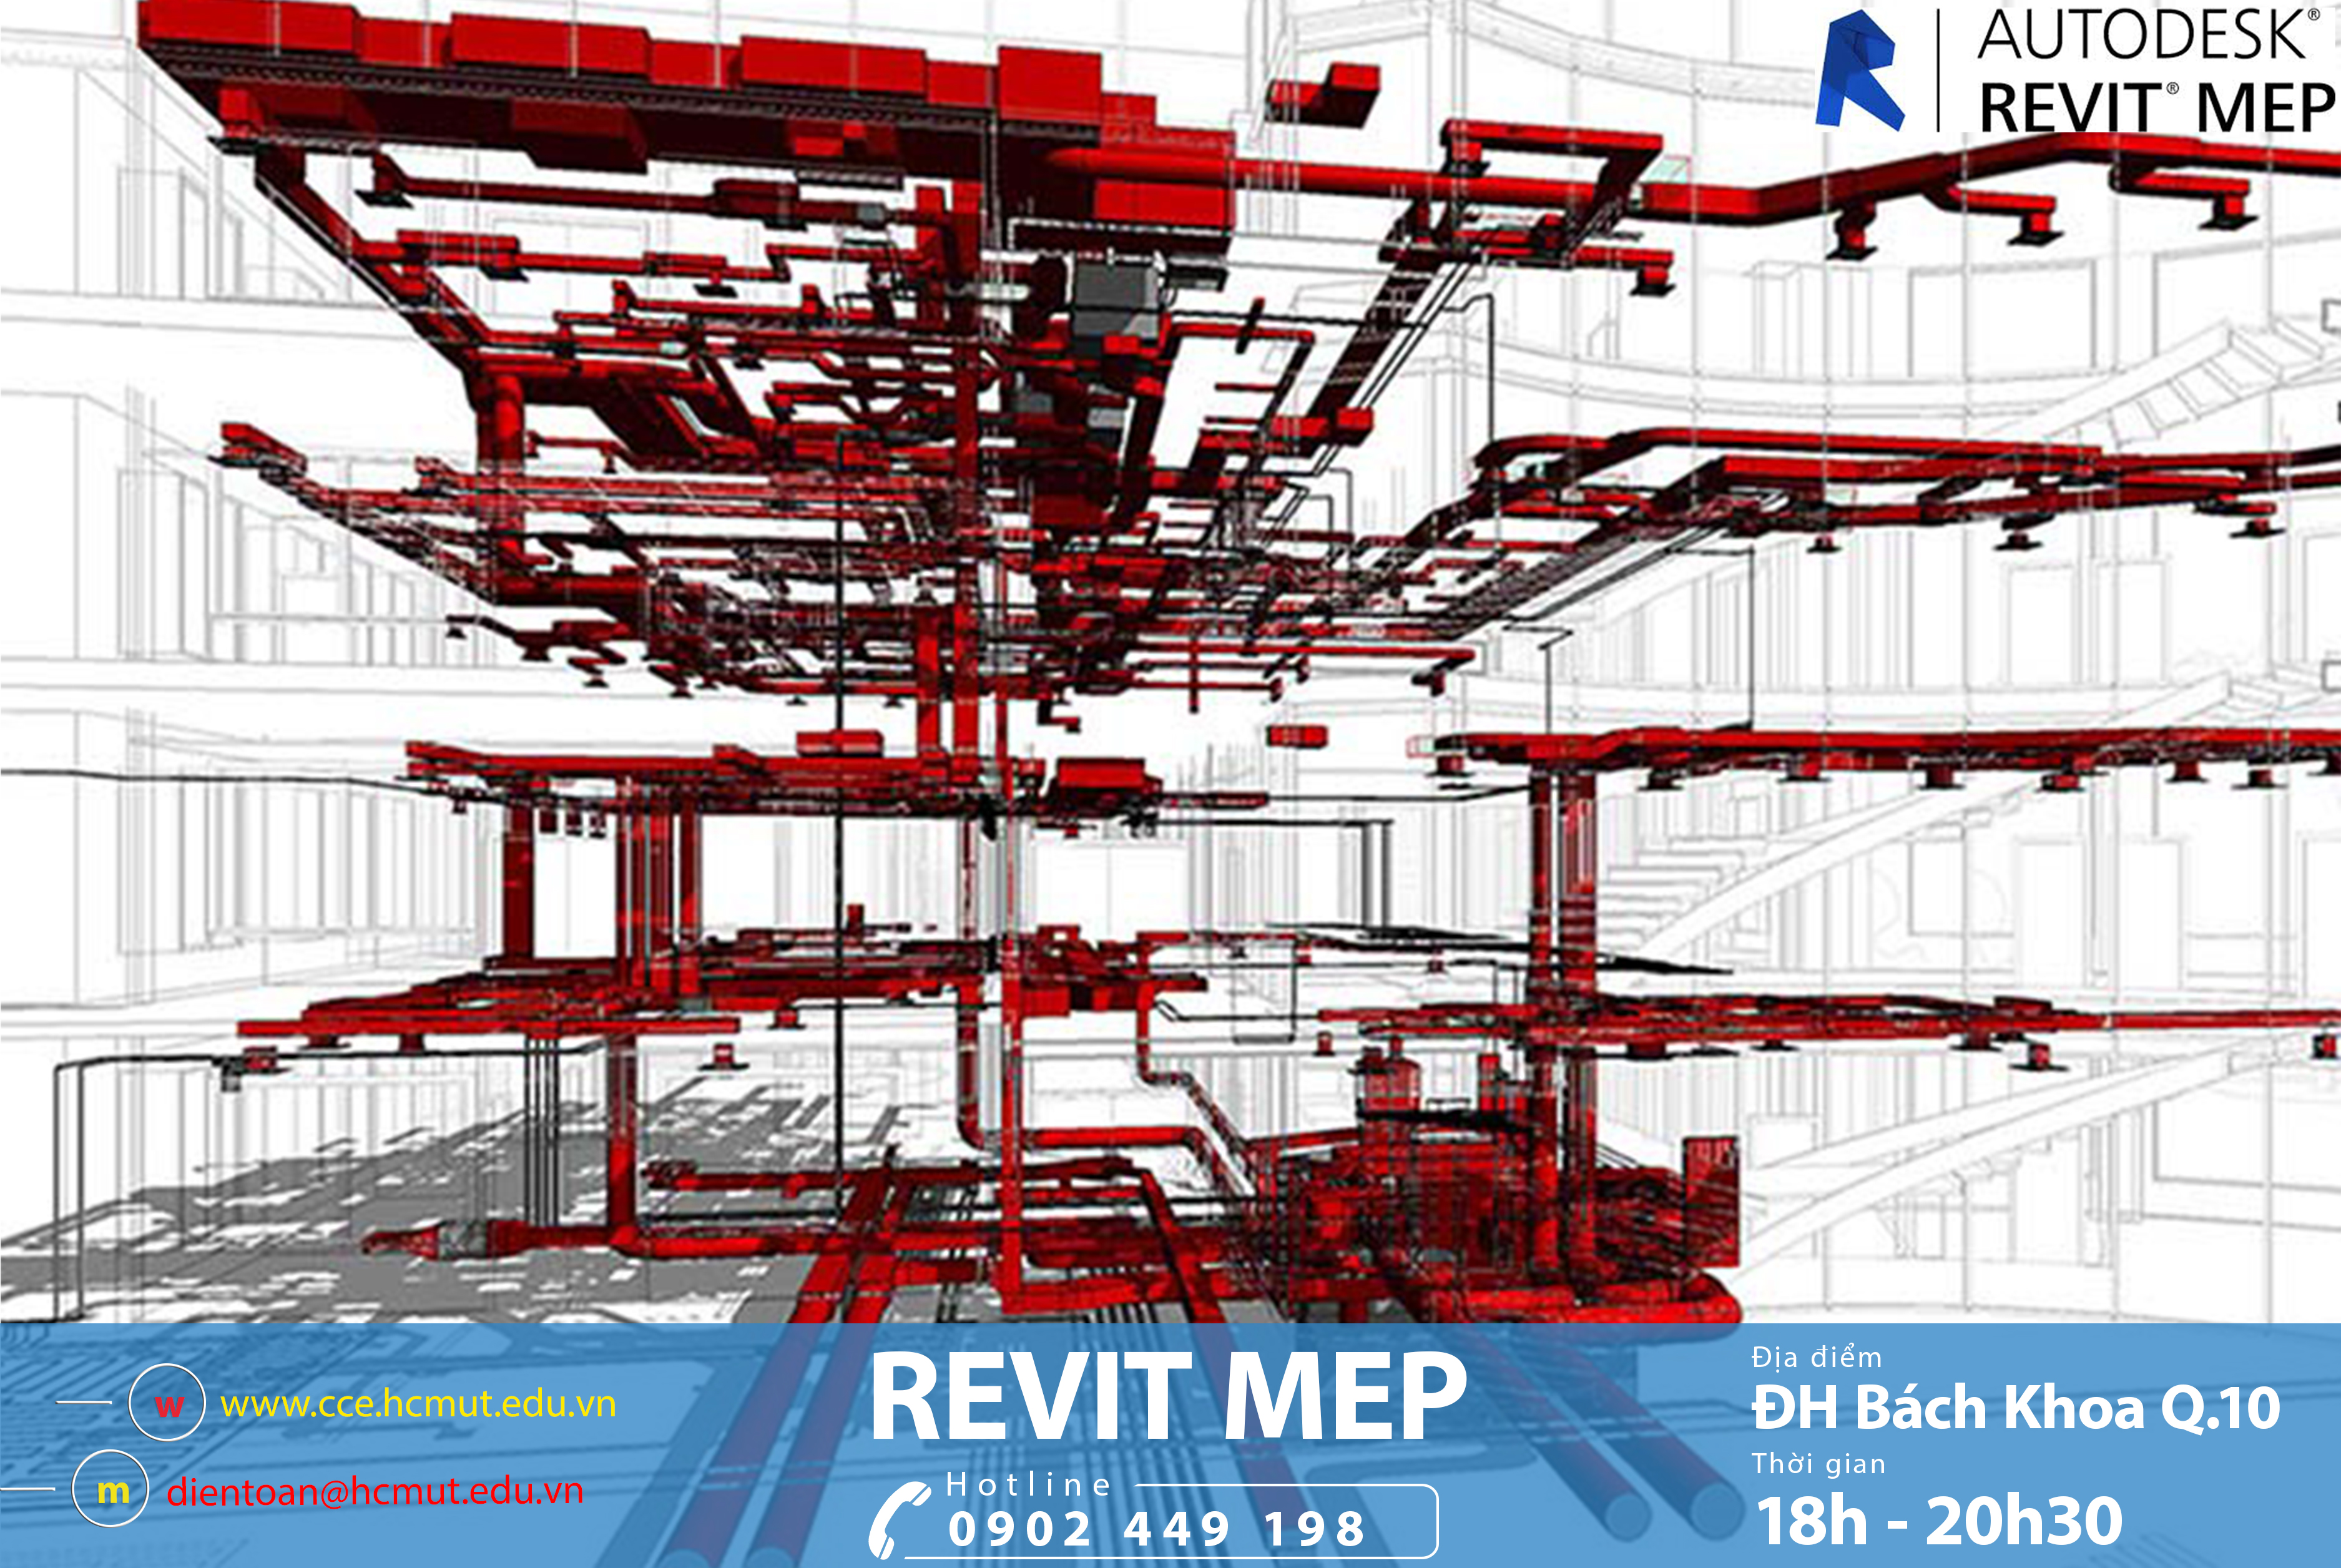 Cách tối ưu hóa tiến trình thiết kế và tính toán hệ thống MEP trên Revit là gì?
